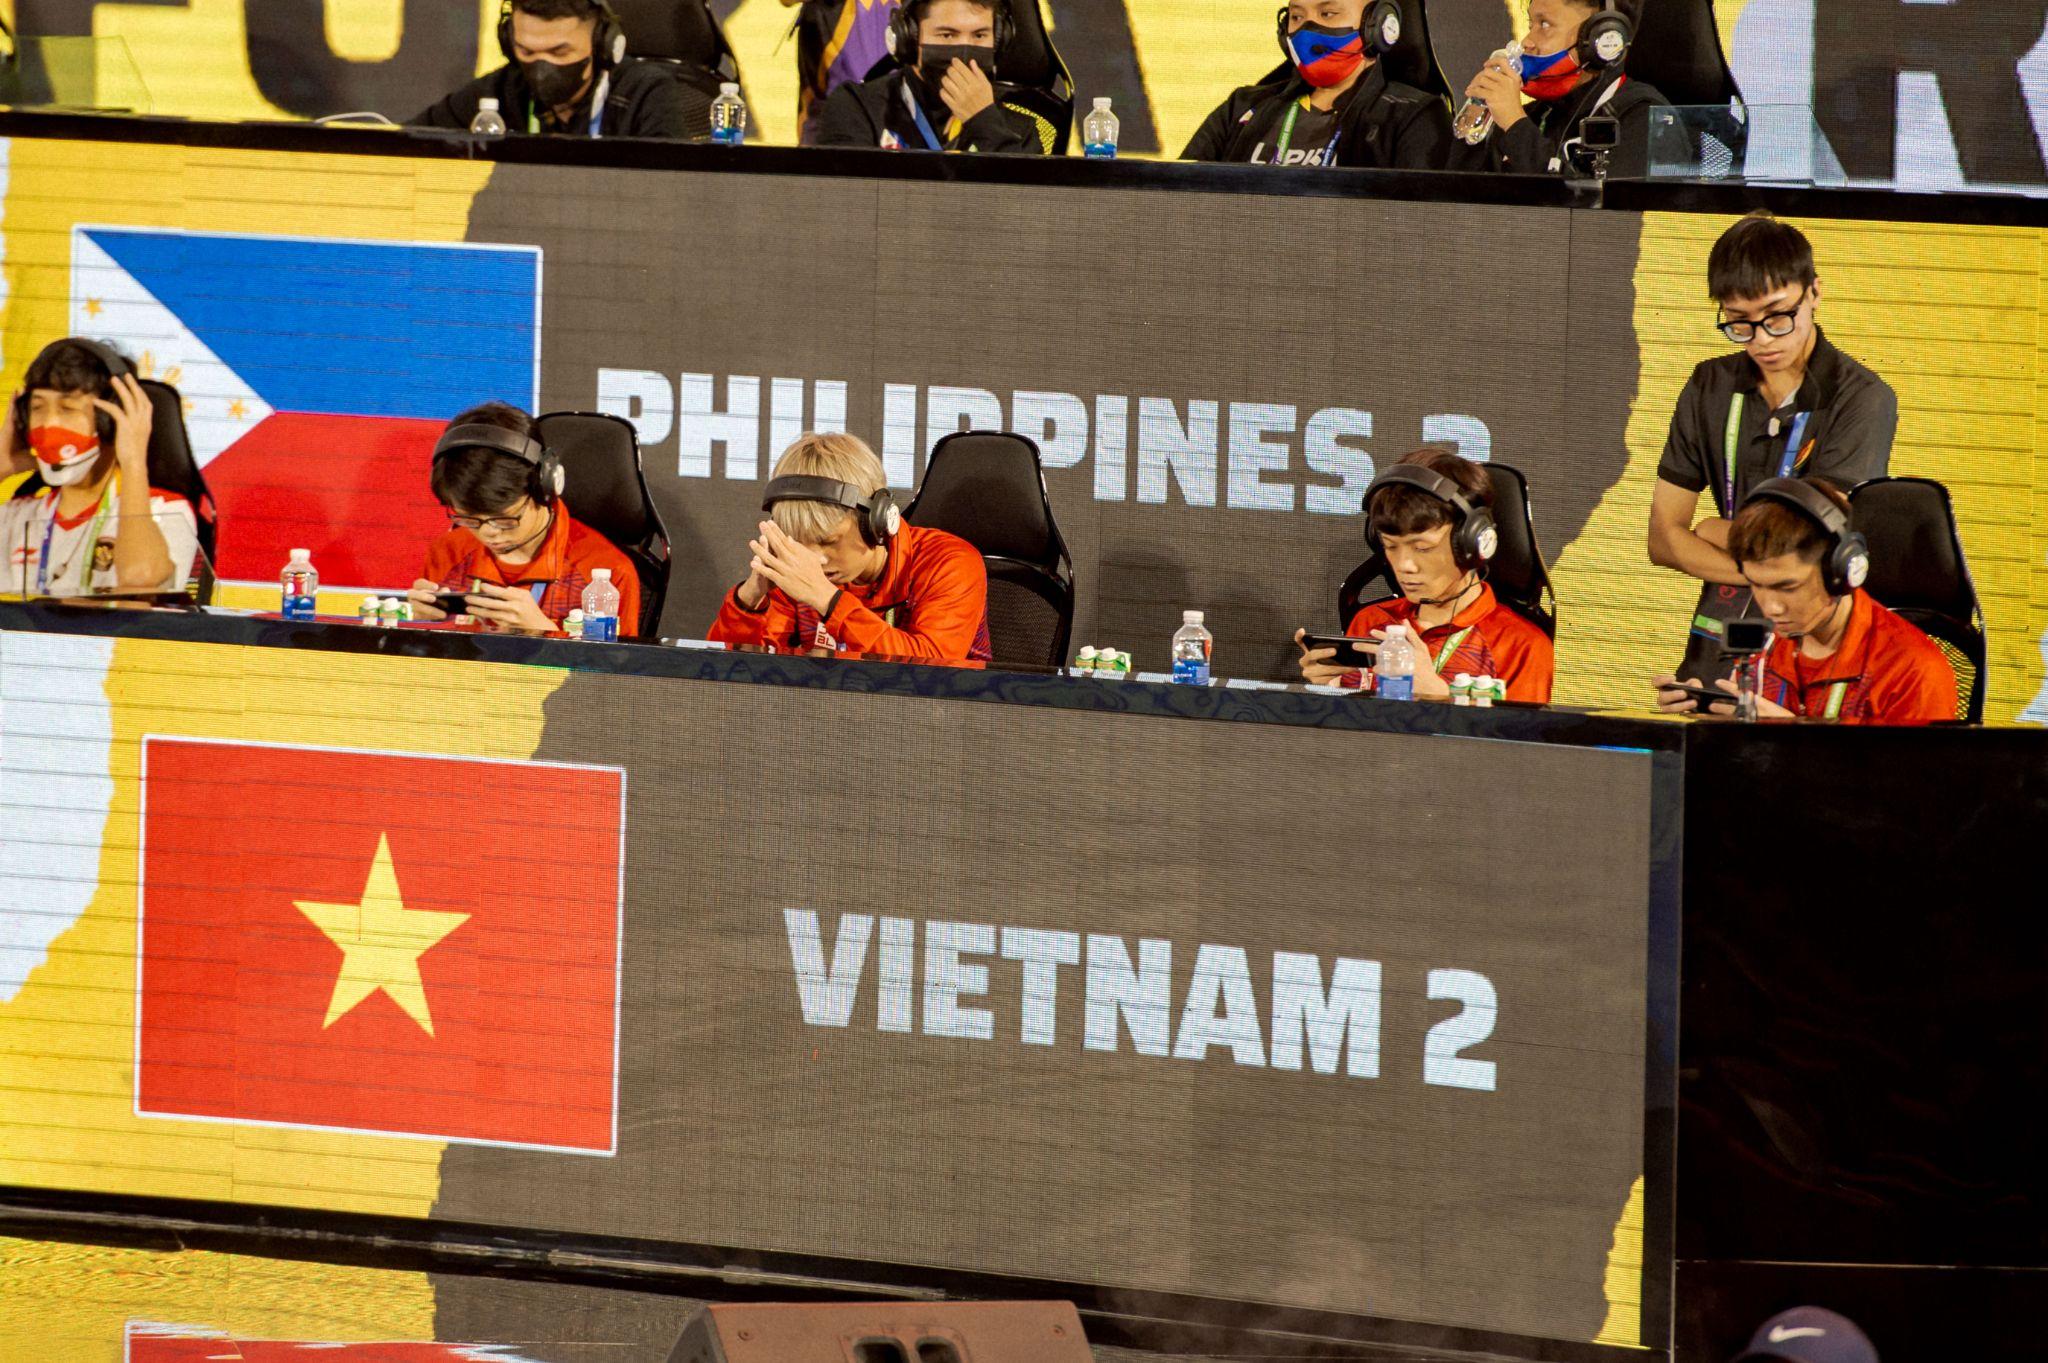 Tổng kết trận chung kết ngày 2 nội dung Free Fire tại SEA Games 31, có chút tiếc nuối nhưng cả hai tuyển Việt Nam đều giành chiến thắng "Booyah!" một trận